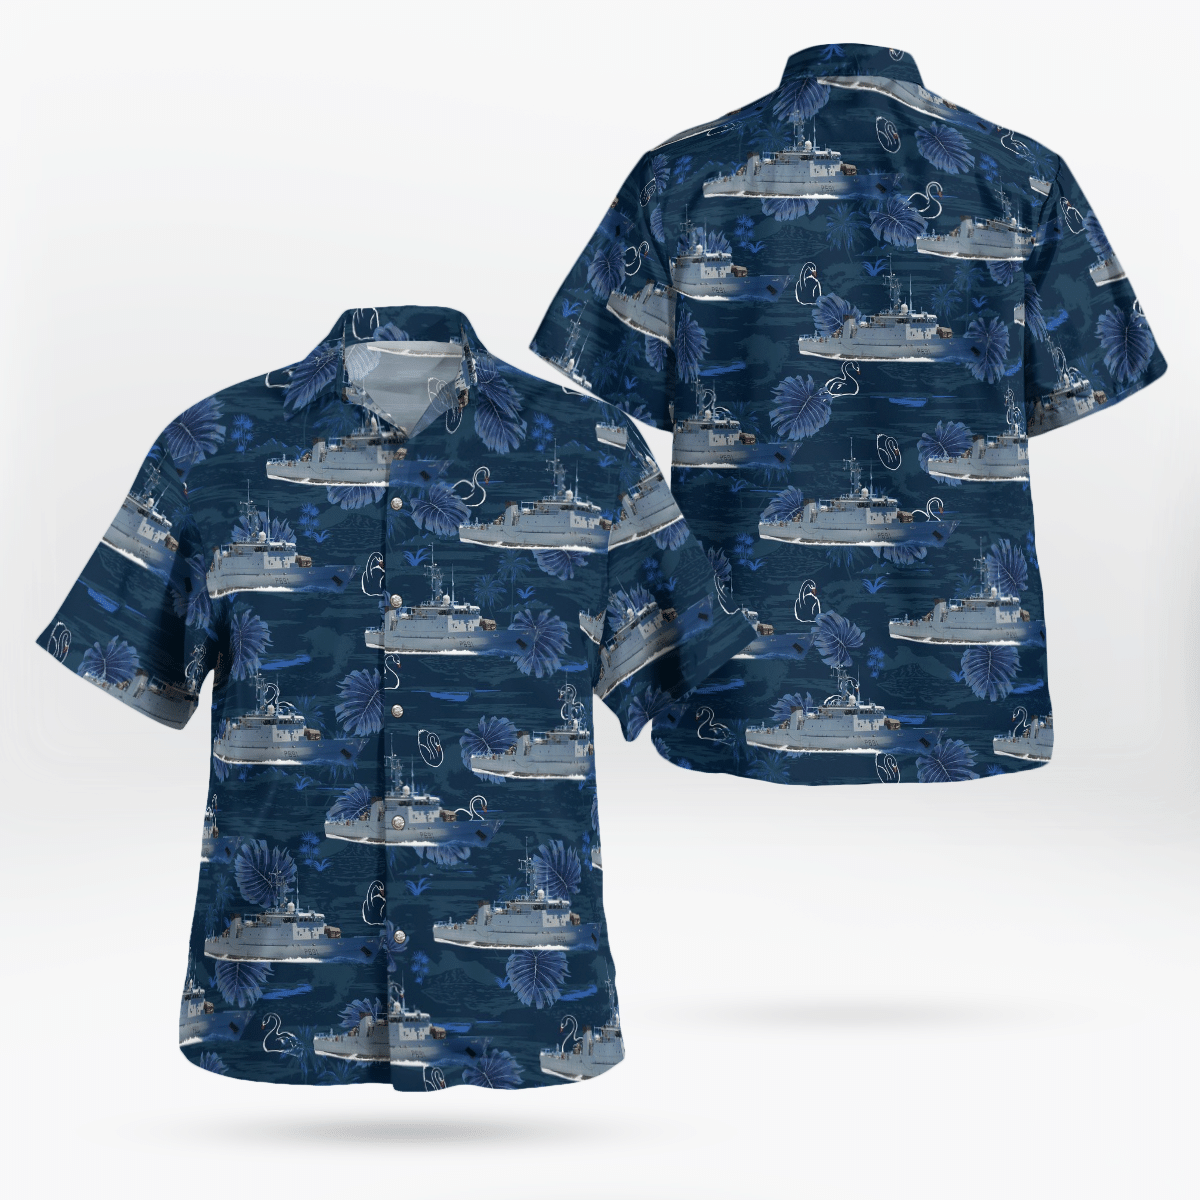 You won't regret buying these Aloha Shirt 193